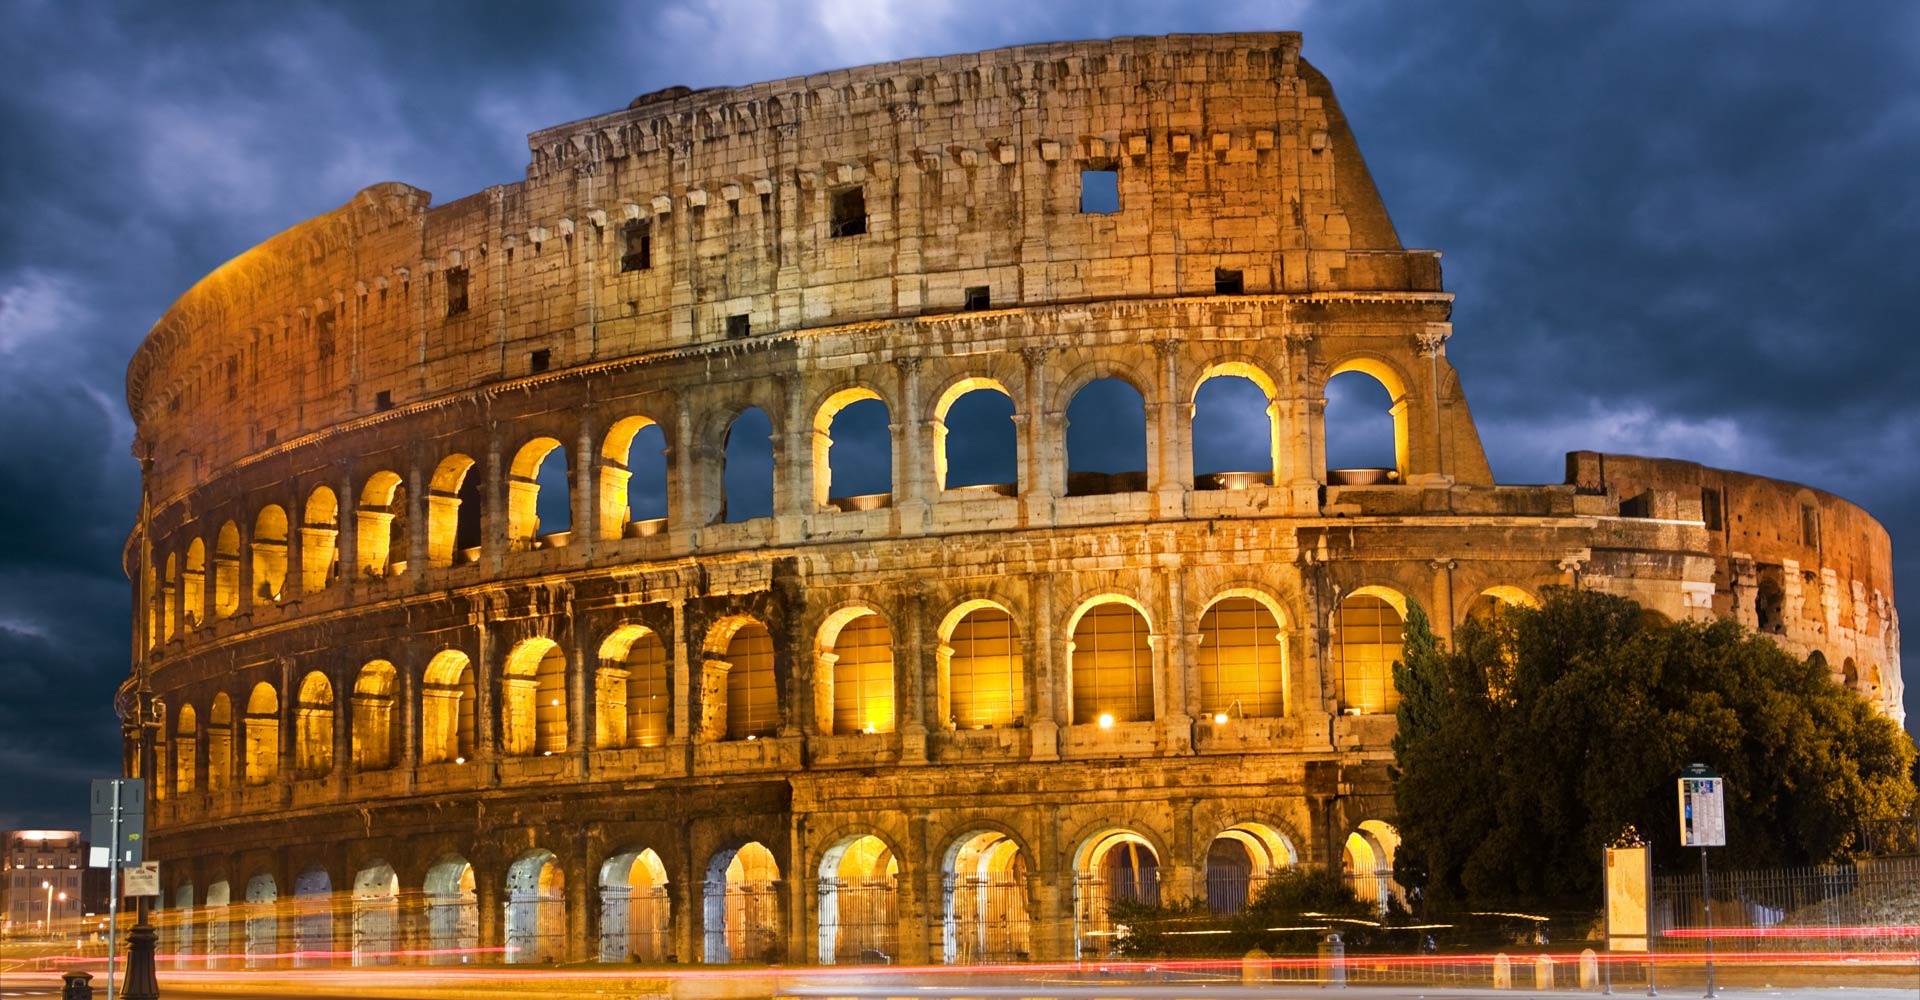 Das Kolosseum als Wahrzeichen Roms.